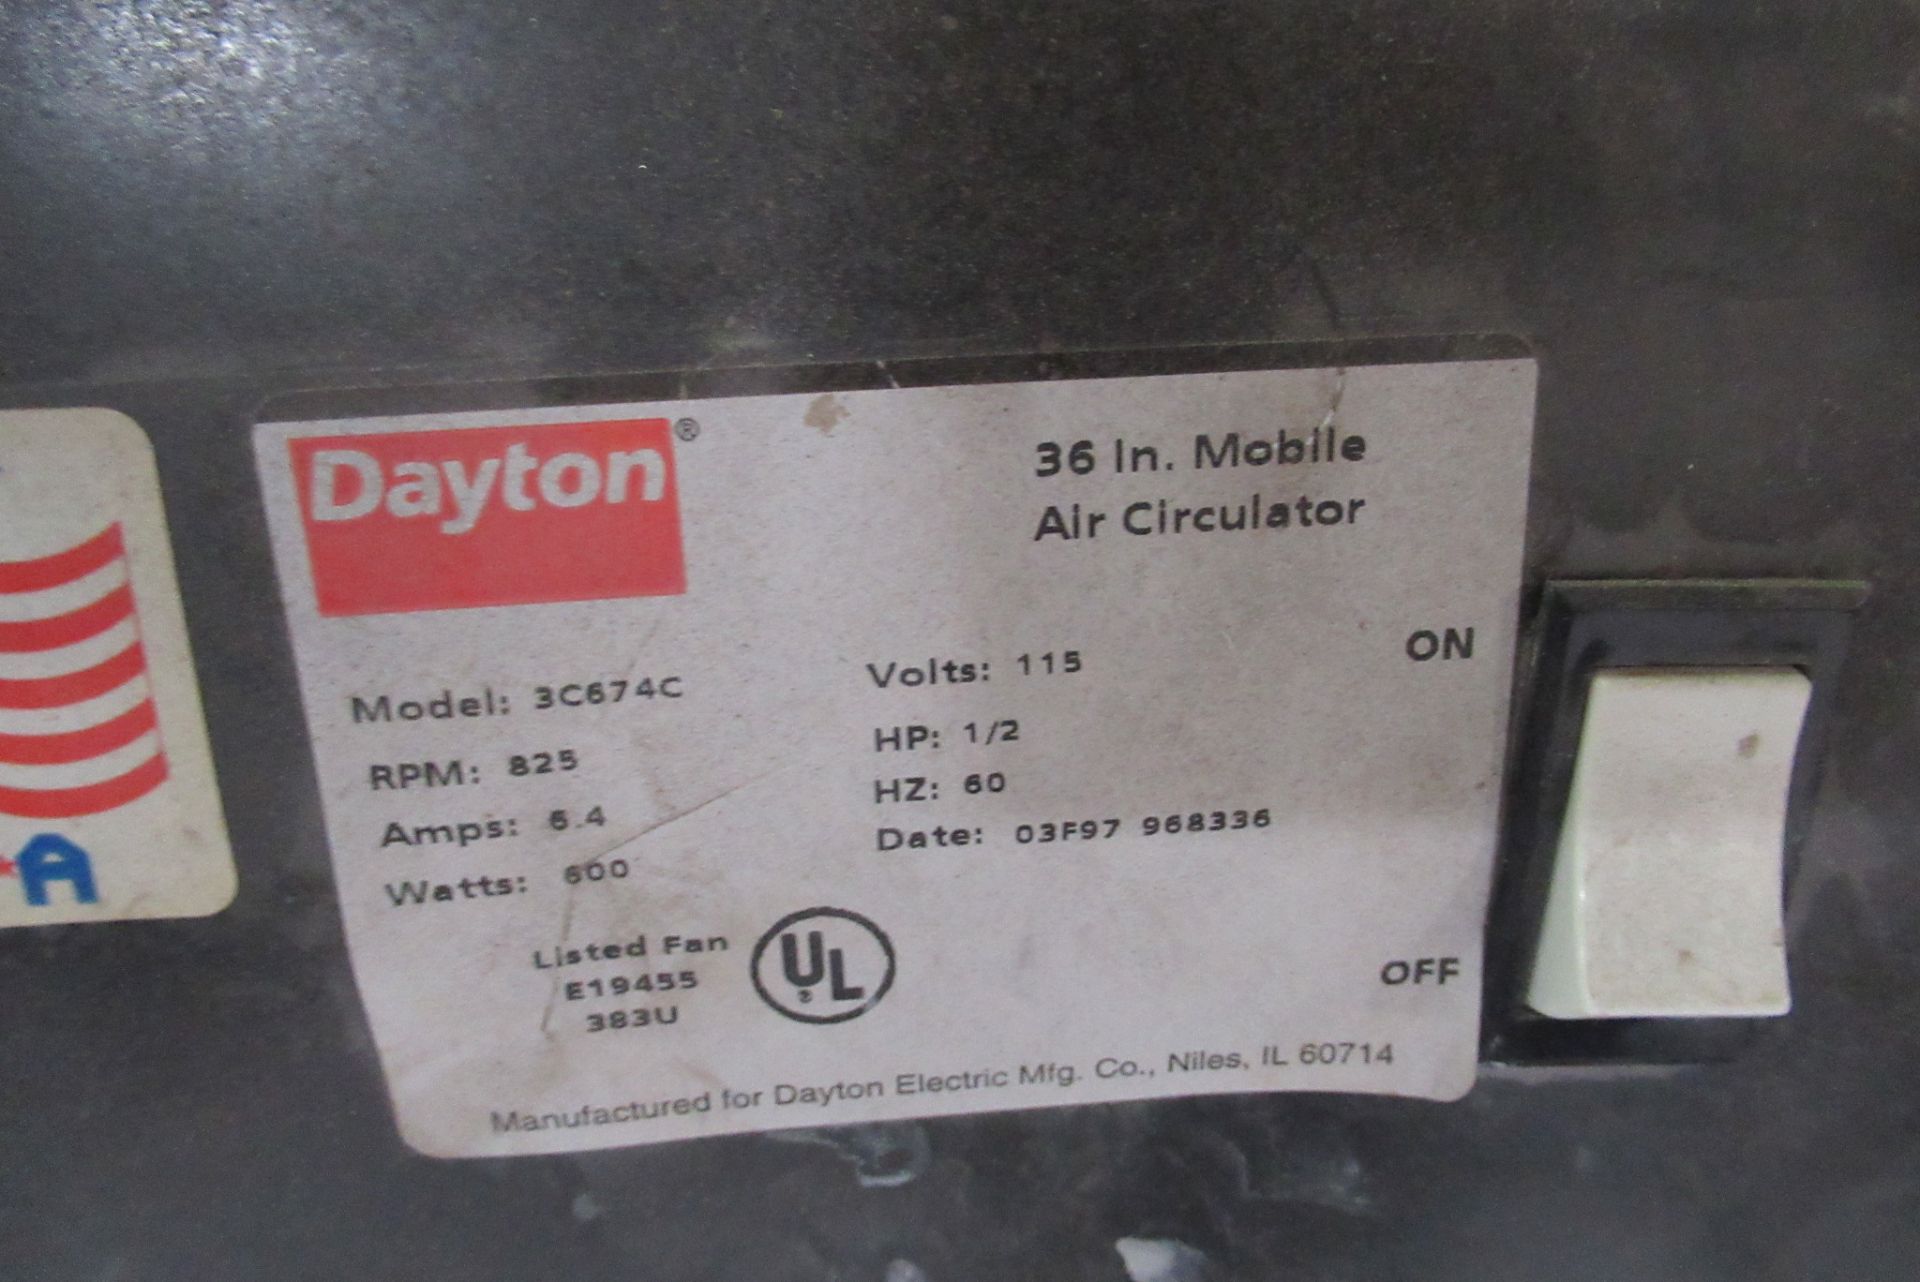 Dayton 36" Mobile Air Circulator - Image 2 of 2